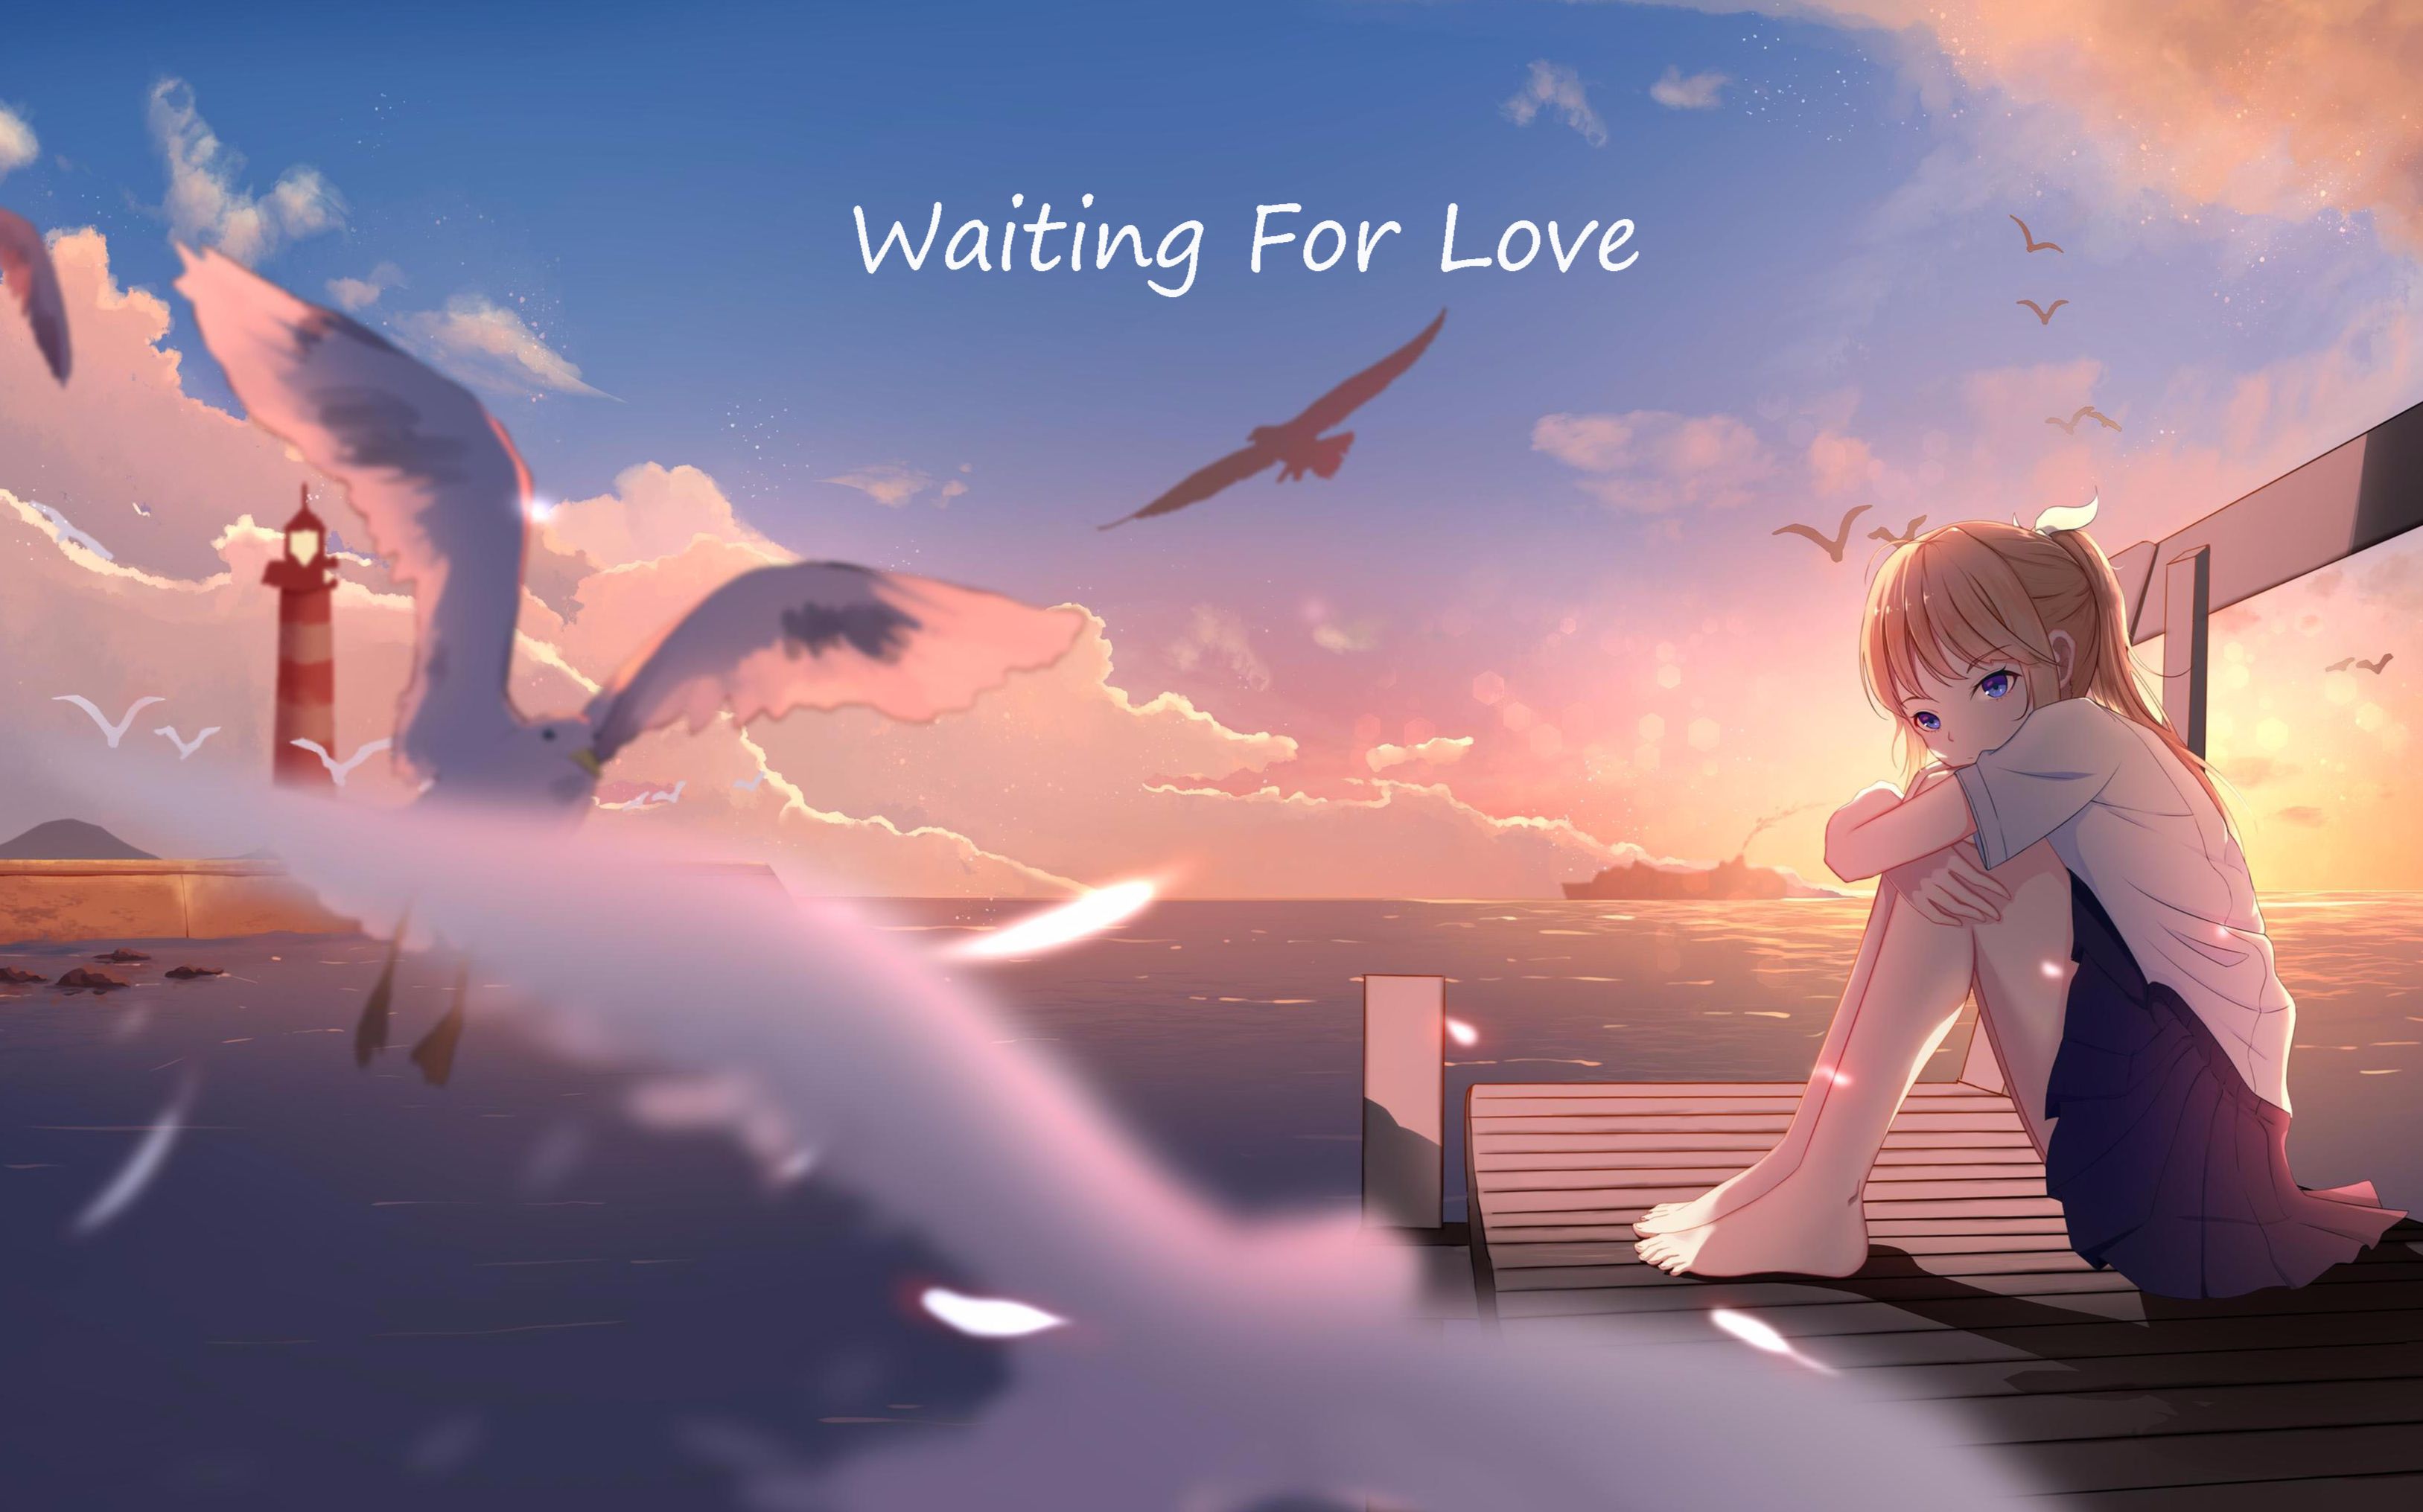 [原曲分享]Waiting For Love 女声版